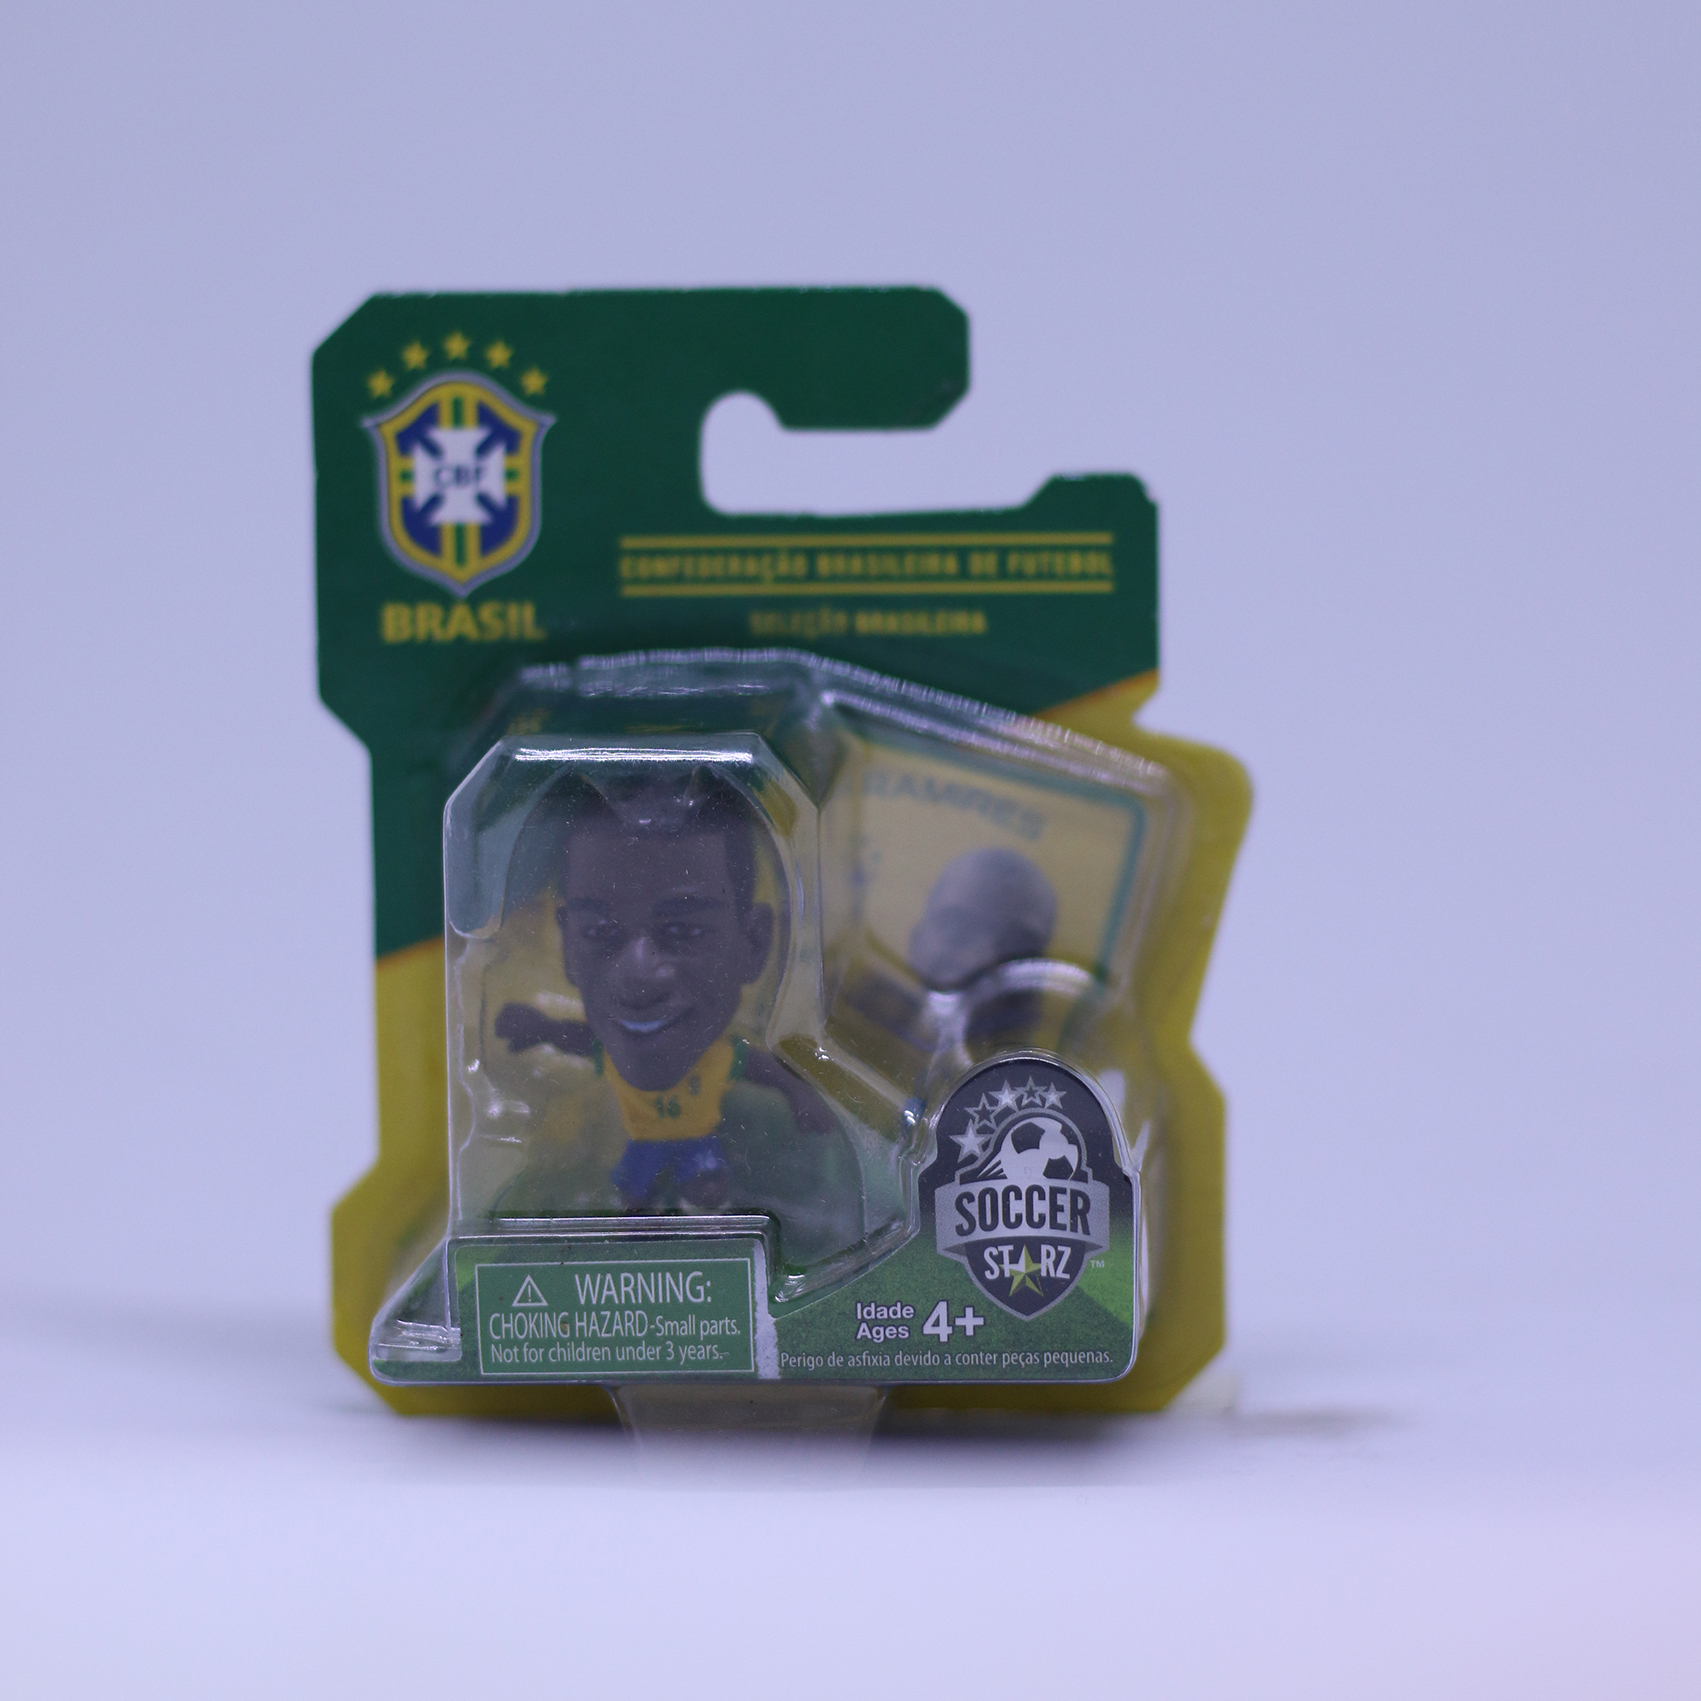 โมเดล นักฟุตบอล Ramires - Home Kit  ลิขสิทธิ์แท้ BRAZIL